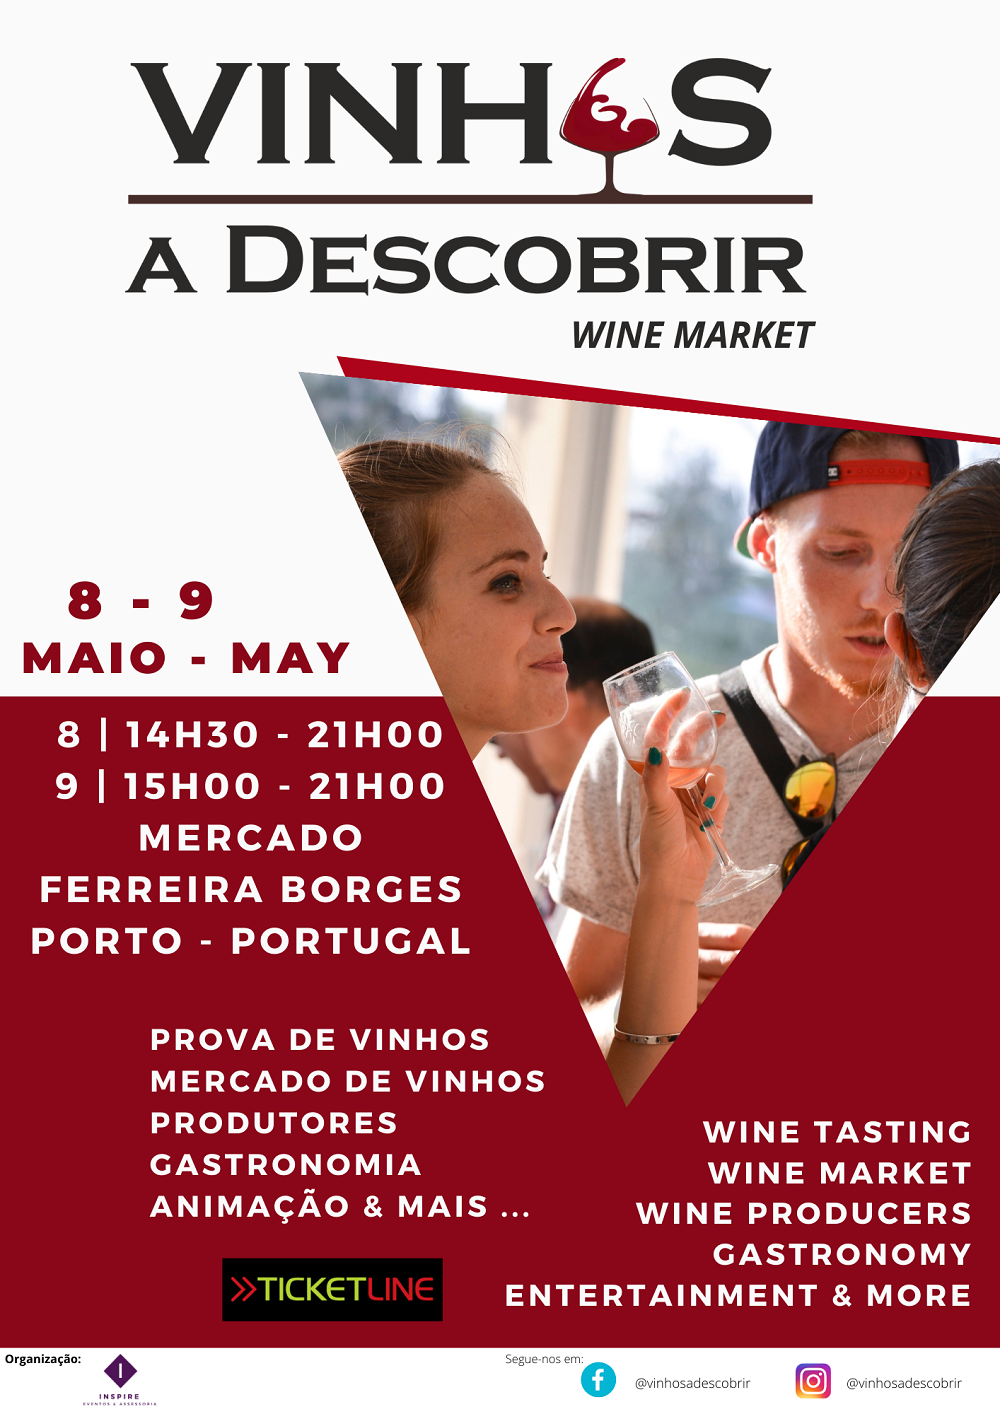 5th edition - VINHOS a Descobrir - Event